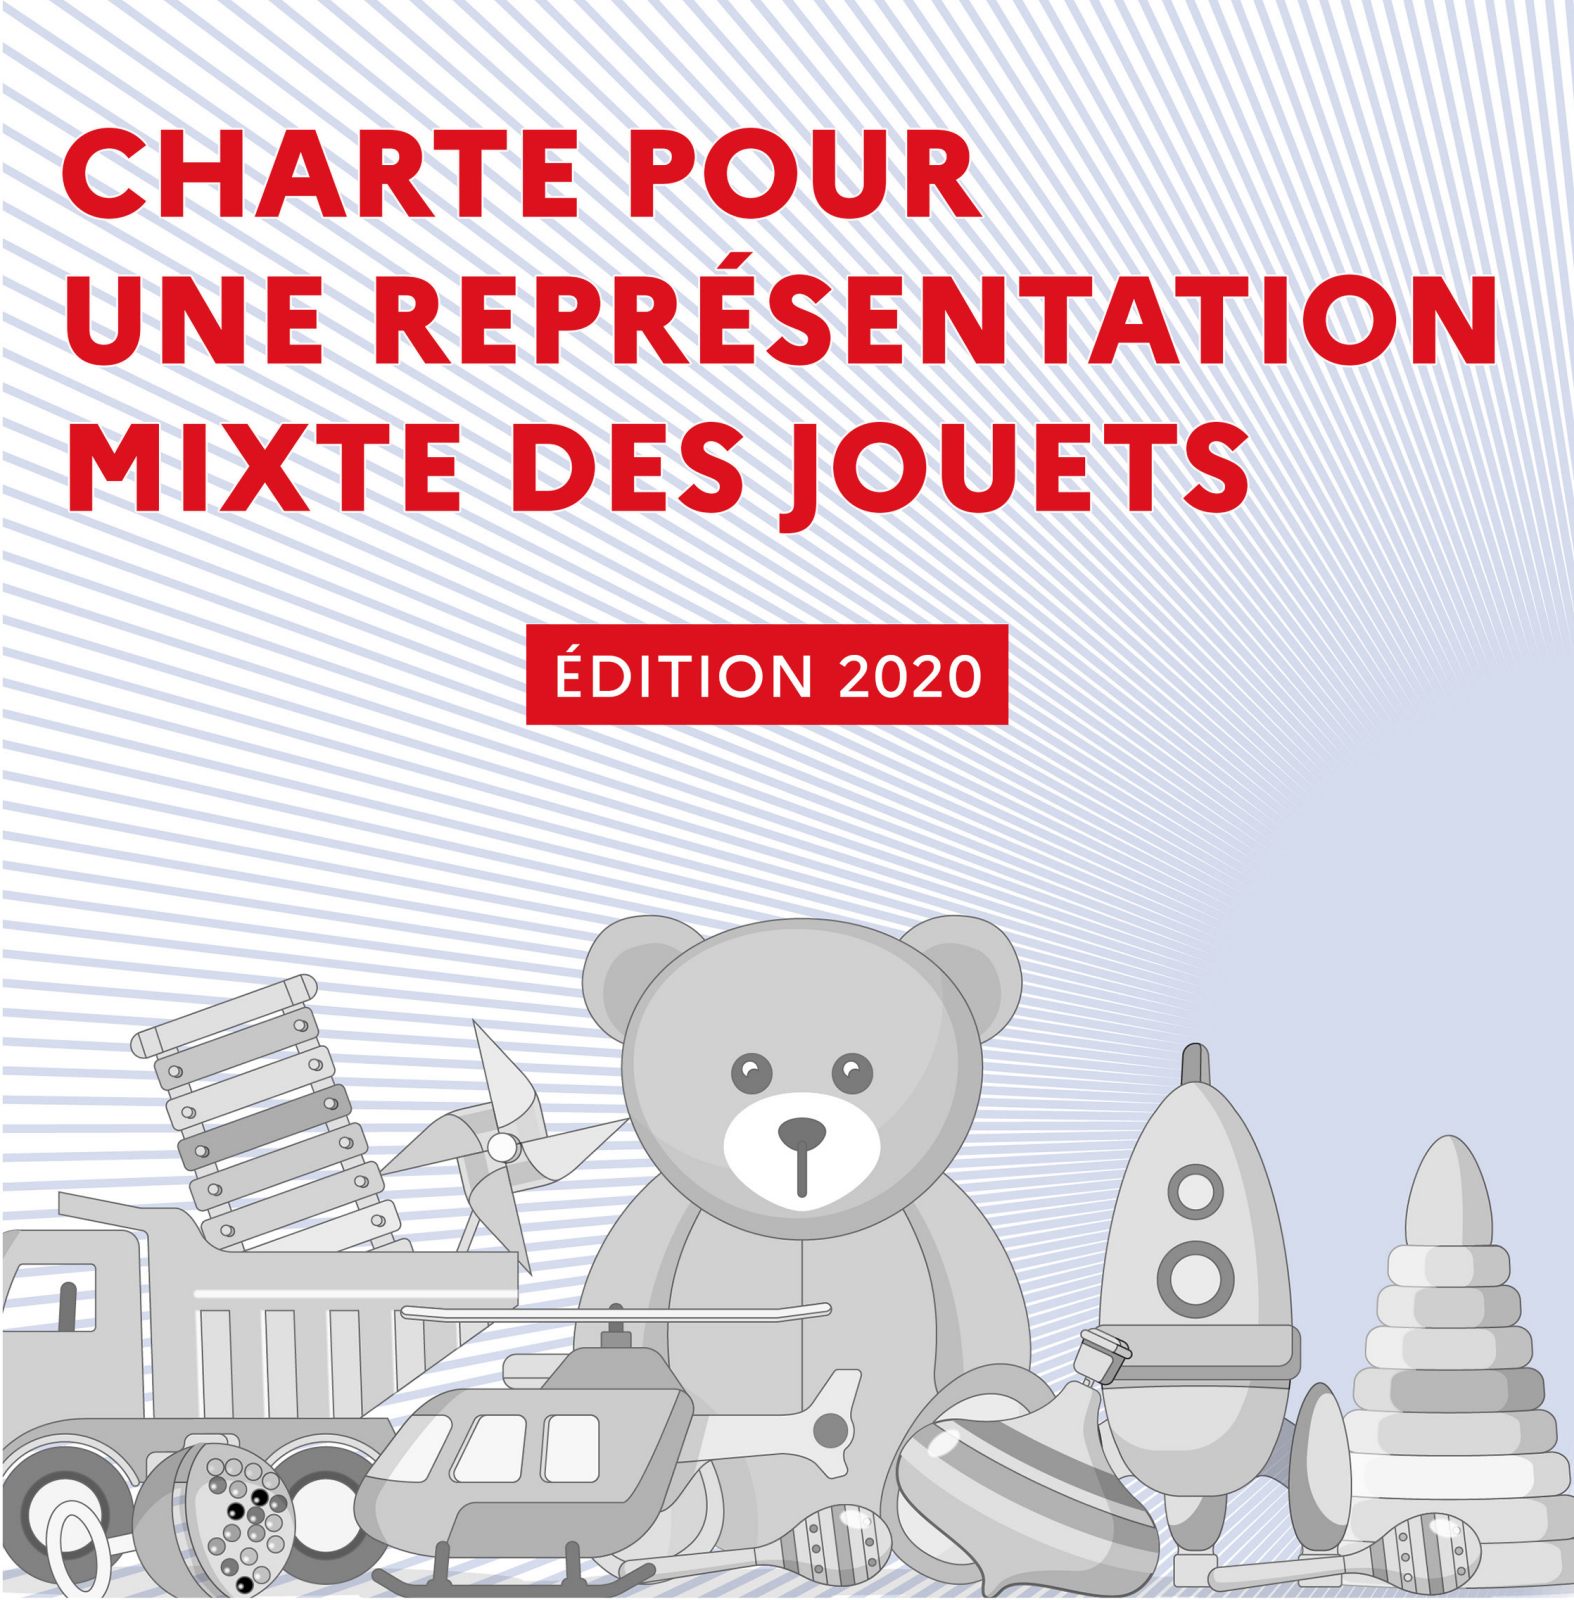 Charte FJP pour une réprésentation des jouets mixtes